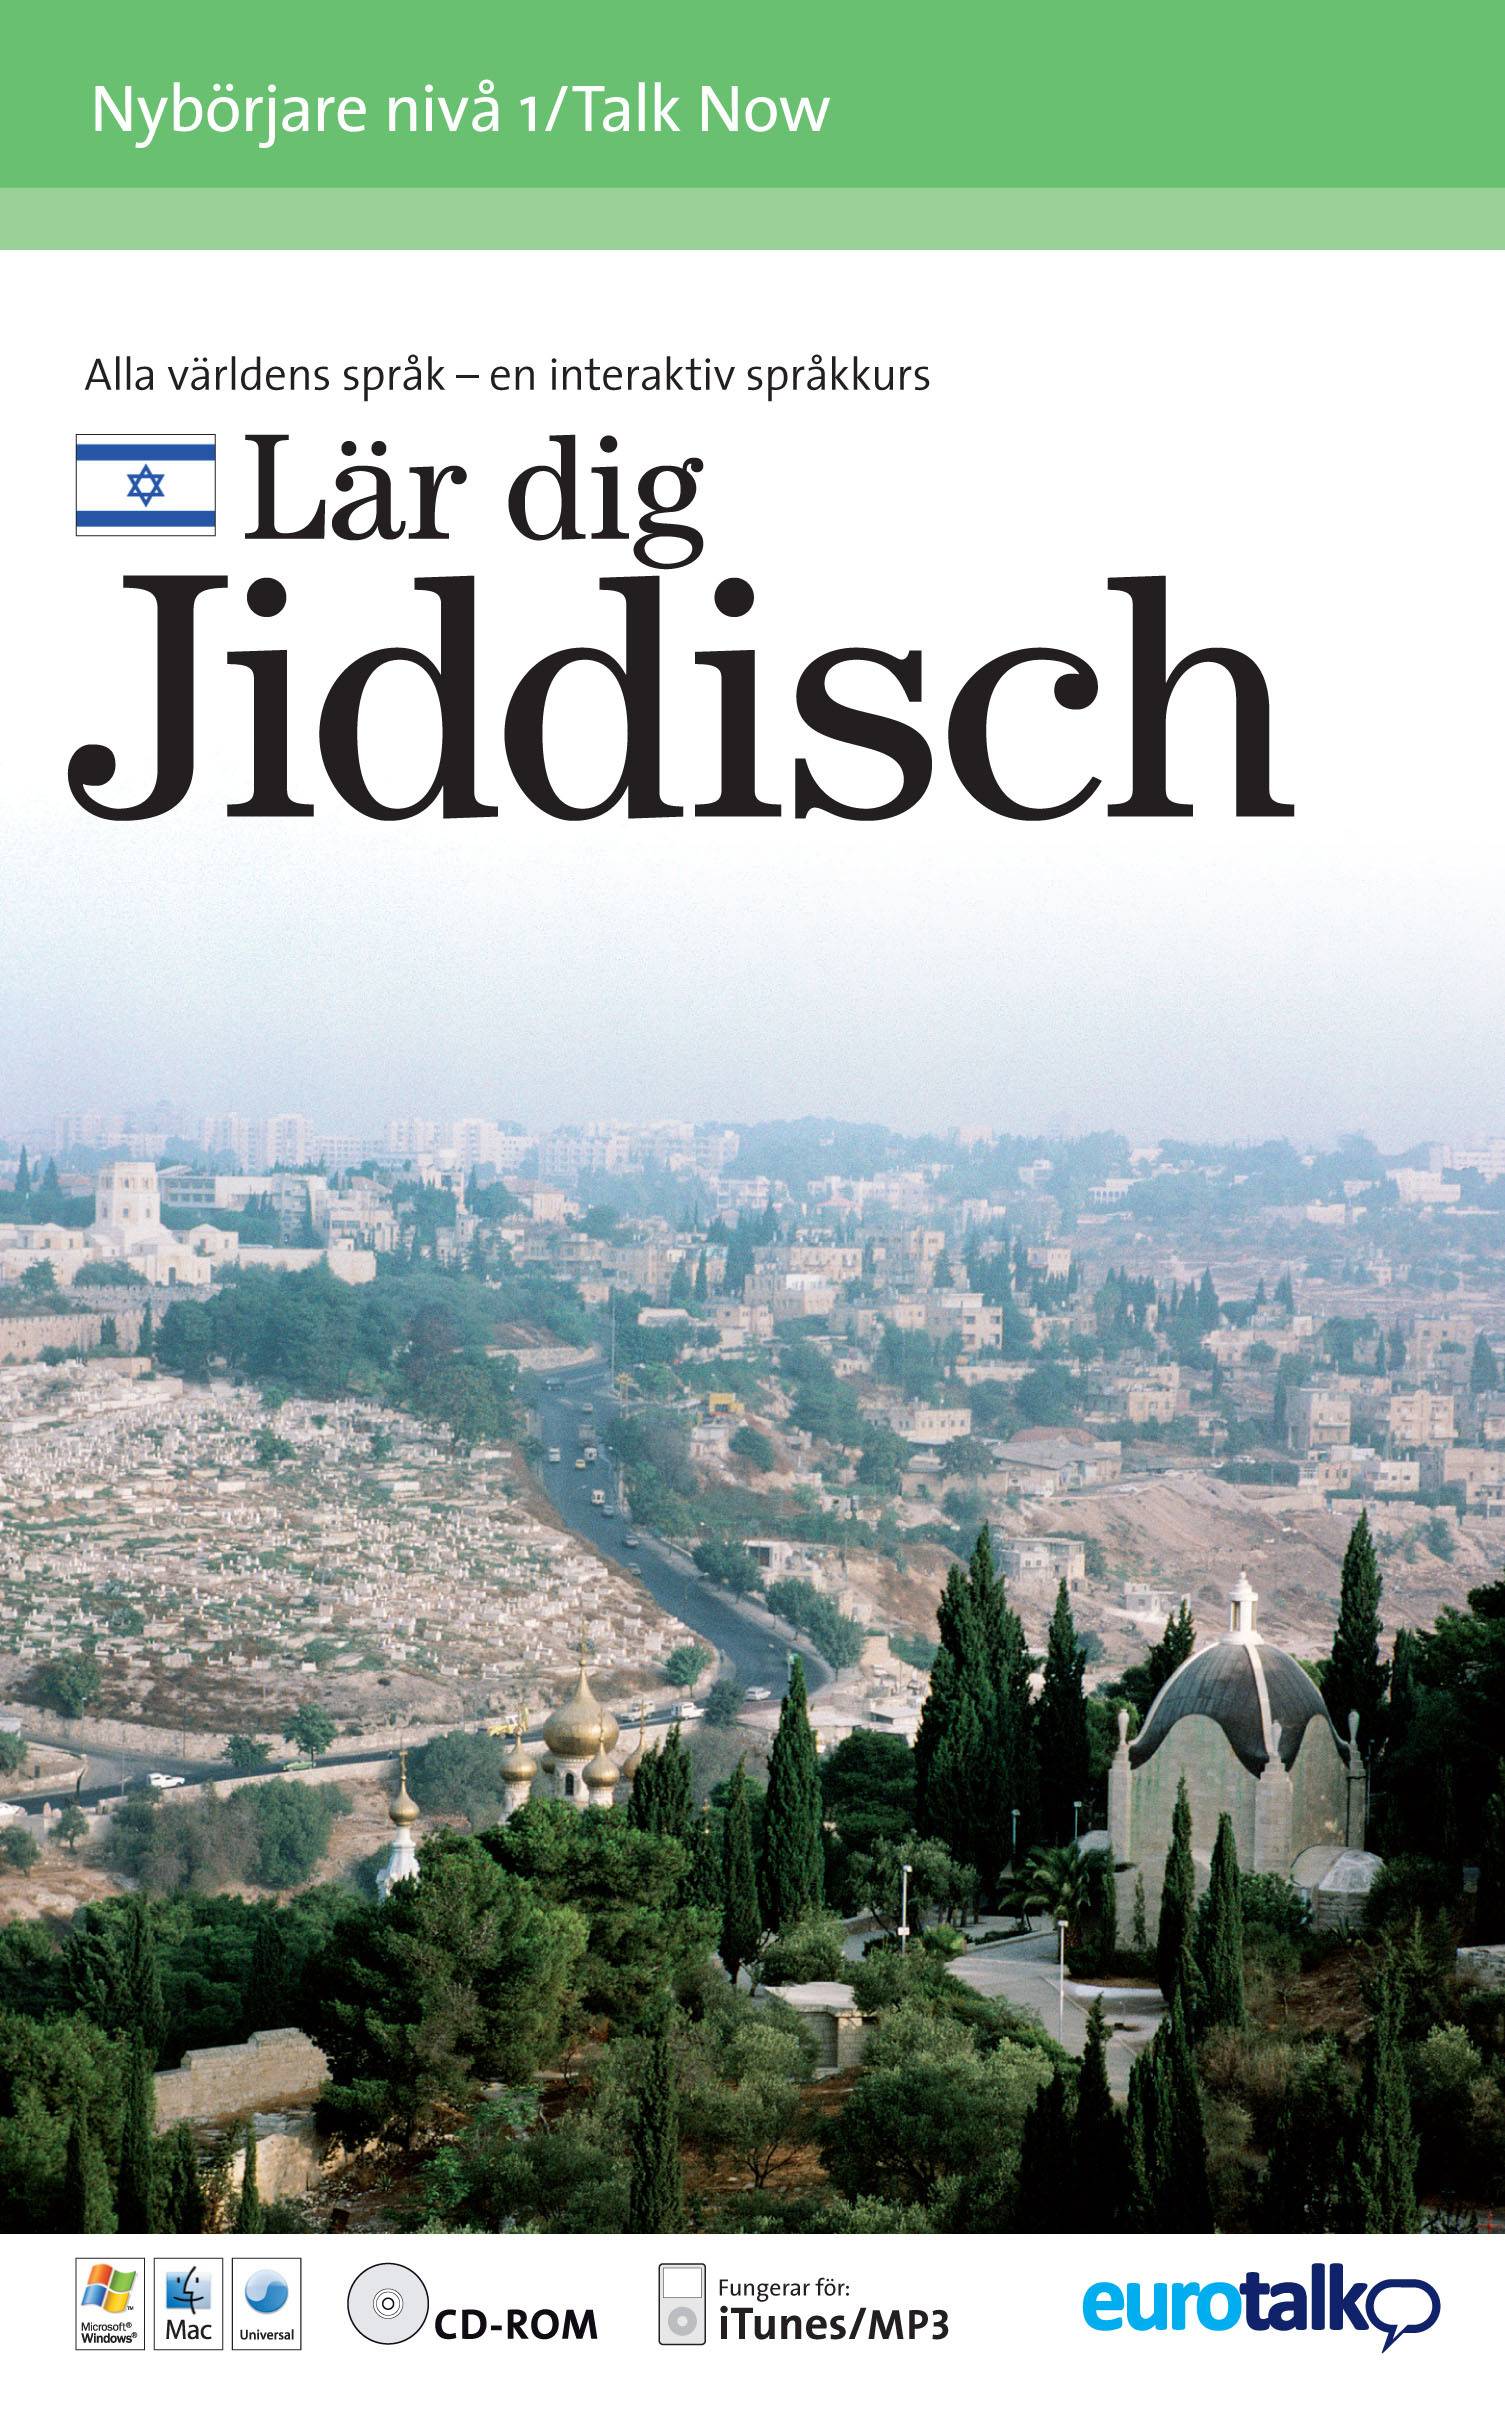 Talk now! Jiddisch